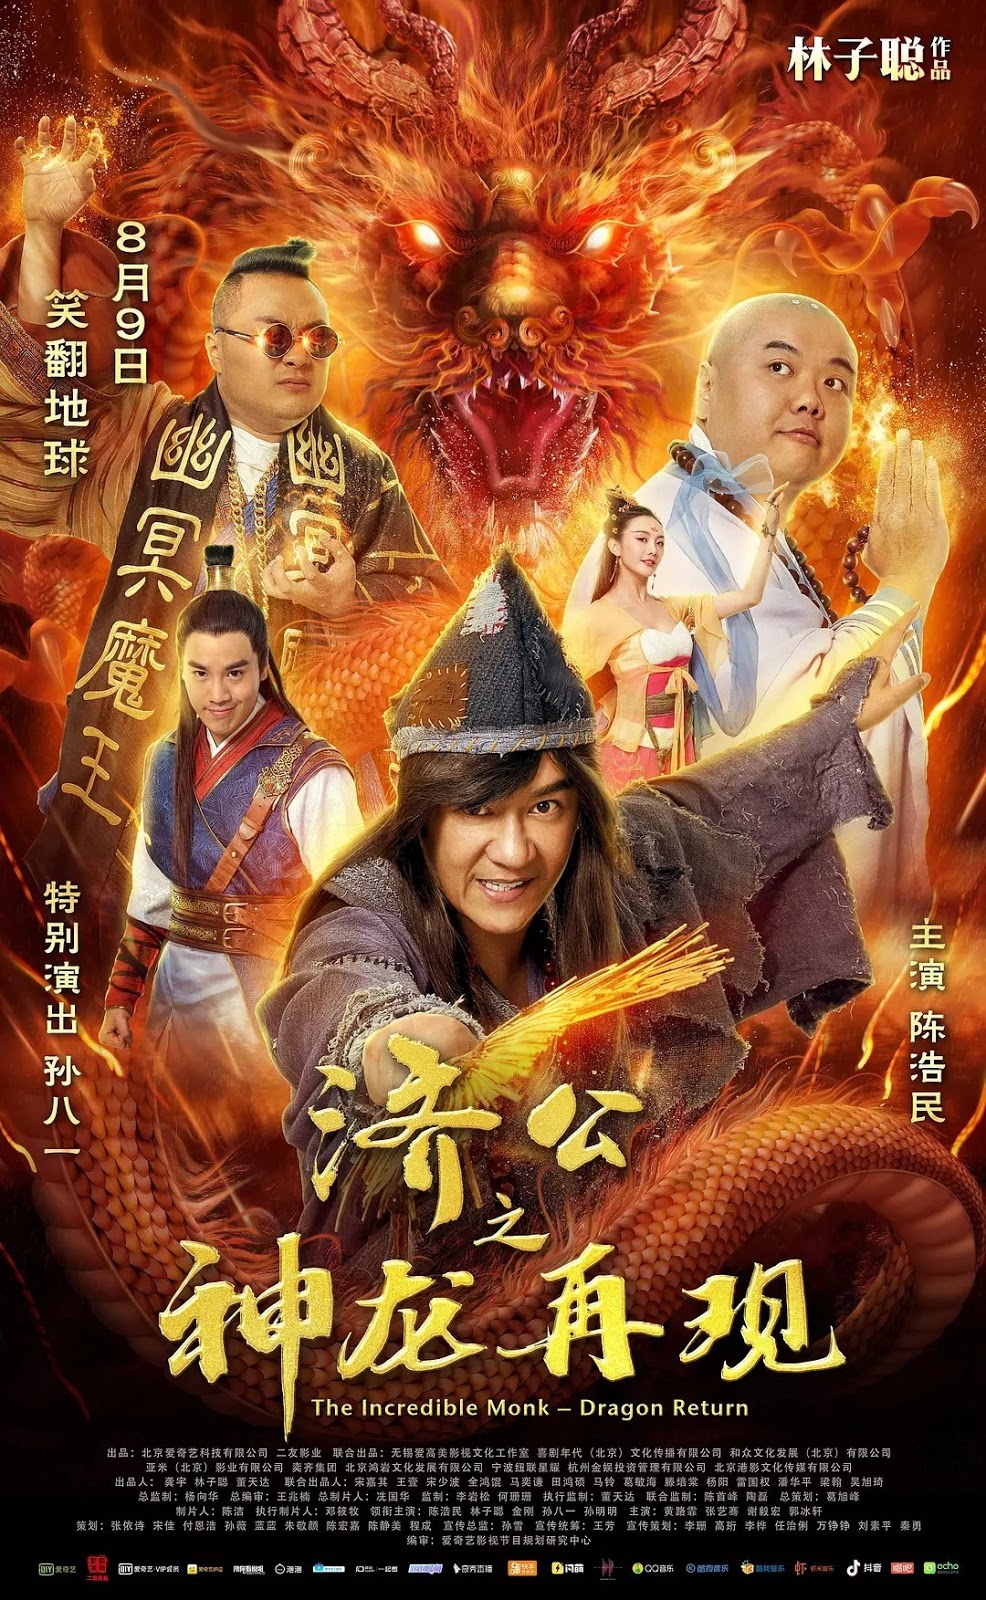 Banner Phim Tế Công 2: Thần Long Tái Xuất (The Incredible Monk: Dragon Return)